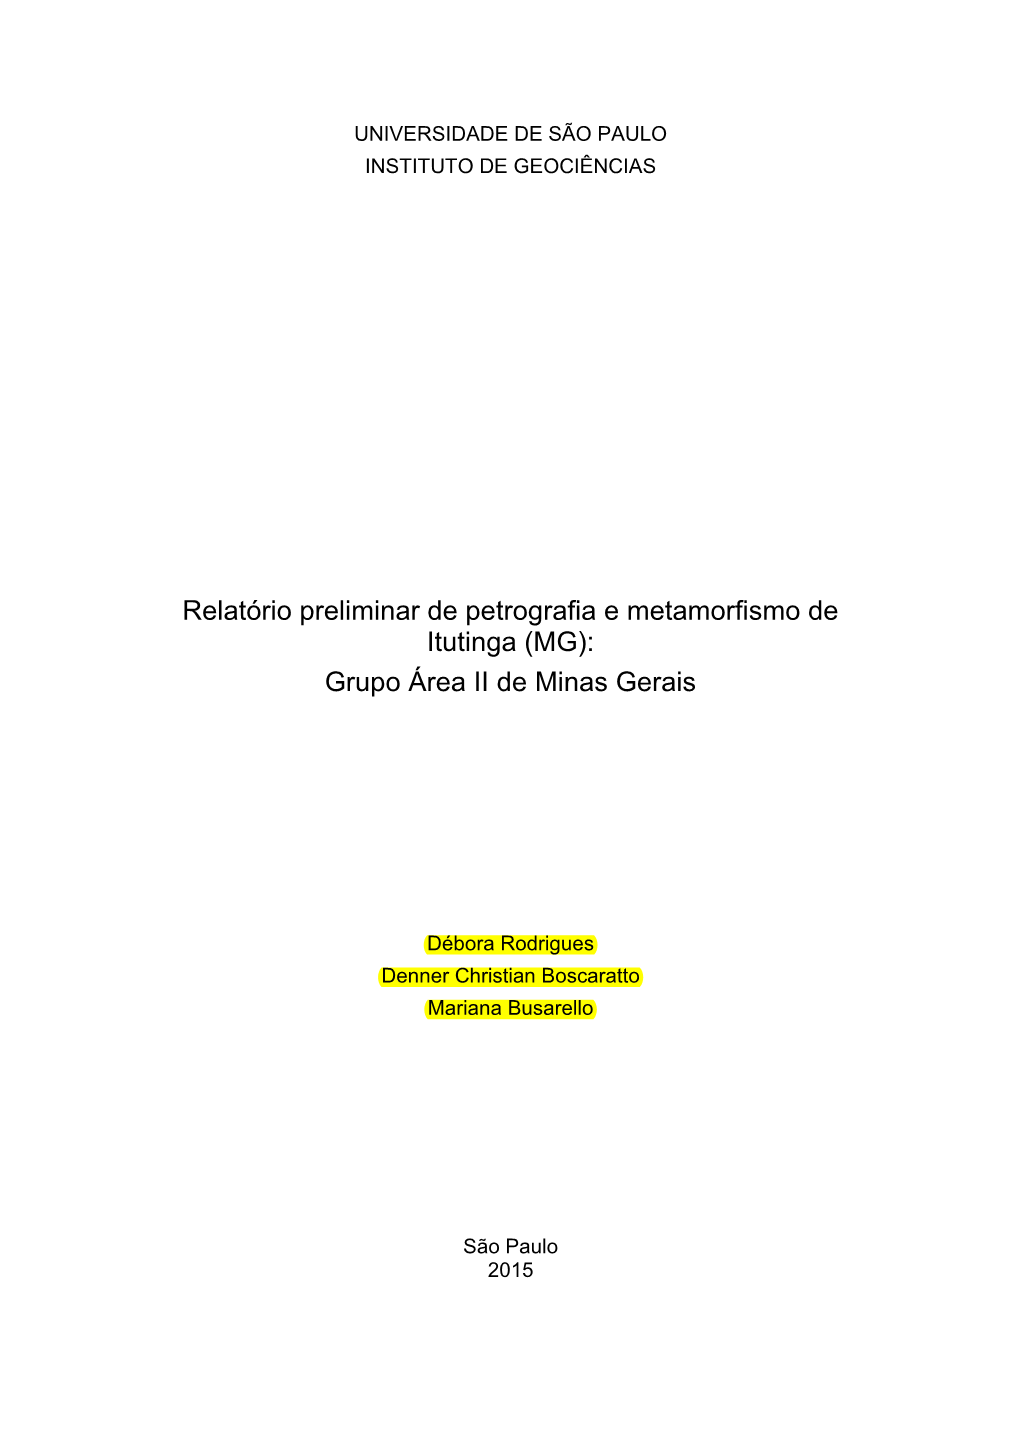 Relatório Preliminar De Petrografia E Metamorfismo De Itutinga (MG): Grupo Área II De Minas Gerais